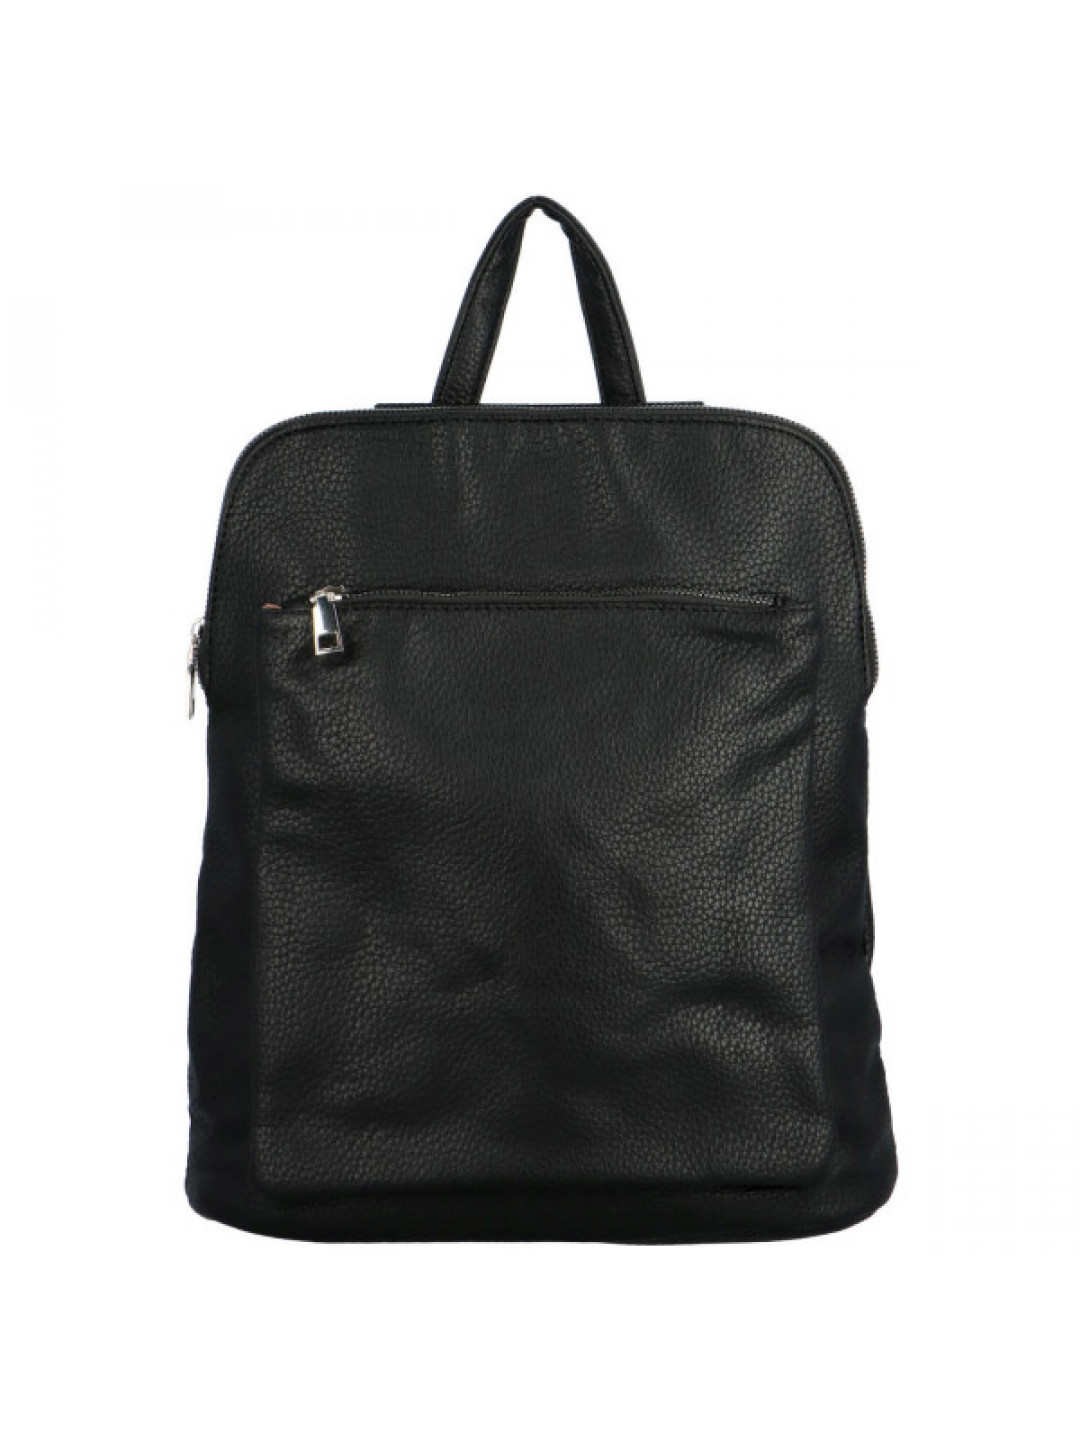 Trendy dámský koženkový kabelko-batoh Sokkoro černá